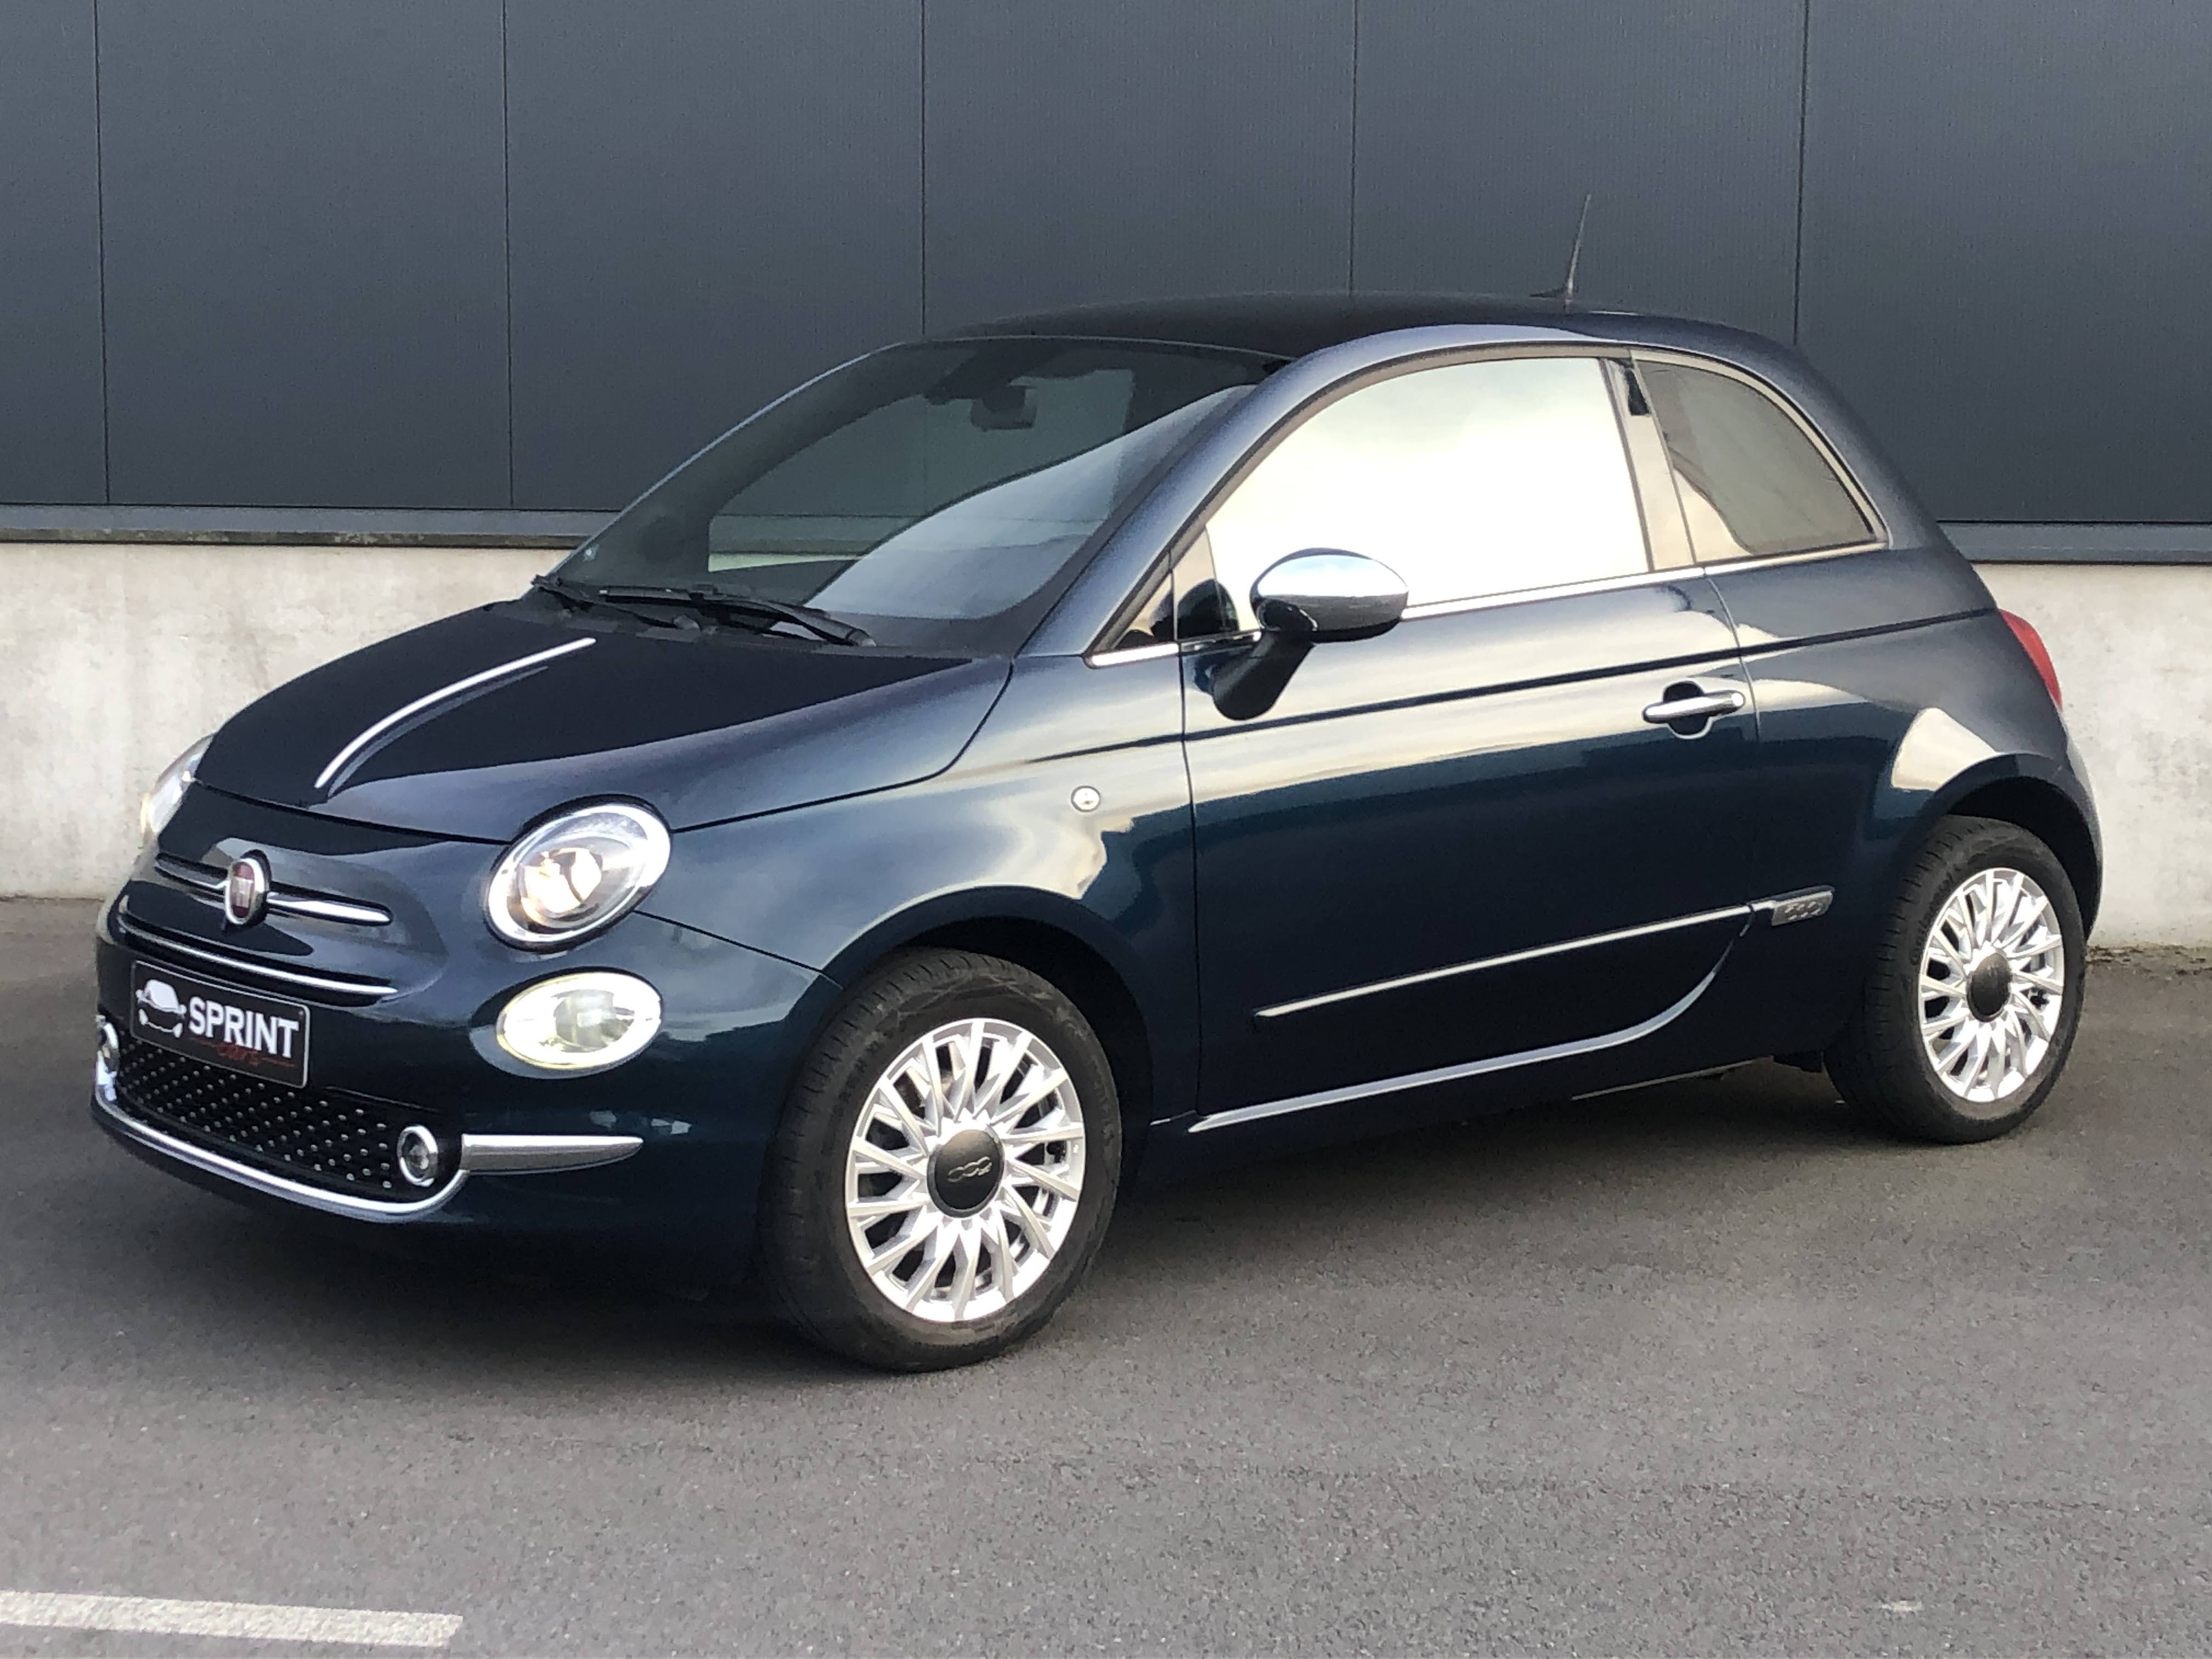 Fiat 500 Star 1.2 - 06-2020 - 33000km - Pic 1